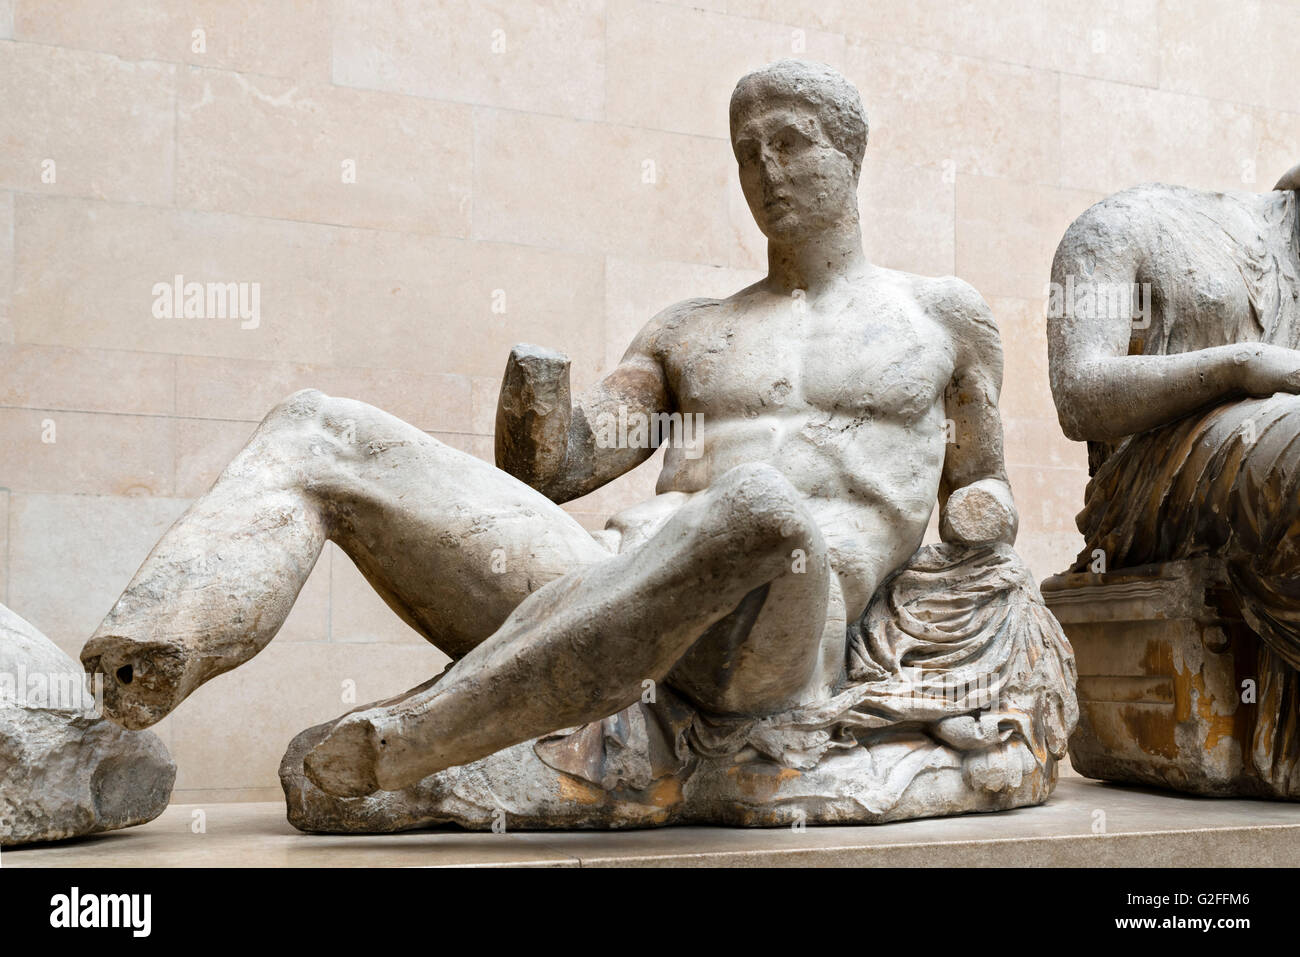 Statue en marbre du fronton est du Parthénon. La statue a été identifié comme Dionysos, le dieu du vin, mais Héraclès et Thésée ont également été suggérées. Les sculptures du Parthénon ou "Parthénon", la Grèce antique et à Rome, galeries, British Museum, Bloomsbury, London, England, UK Banque D'Images